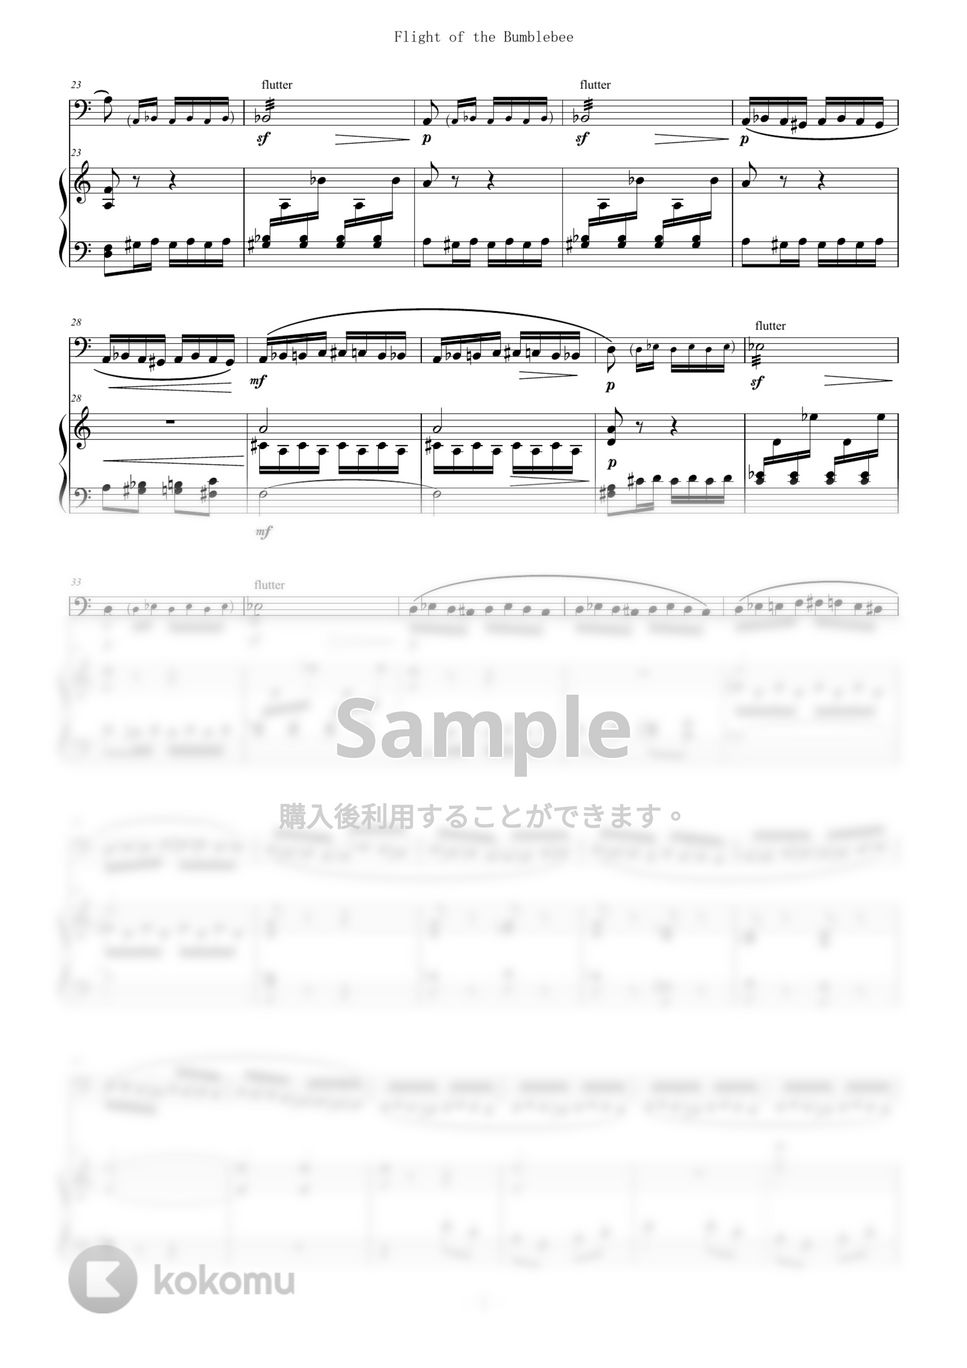 Rimsky-Korsakov - 熊蜂の飛行 for Tuba and Piano (Flight of the Bumblebee) (Piano/Tuba/チューバ/テューバ/) by Zoe